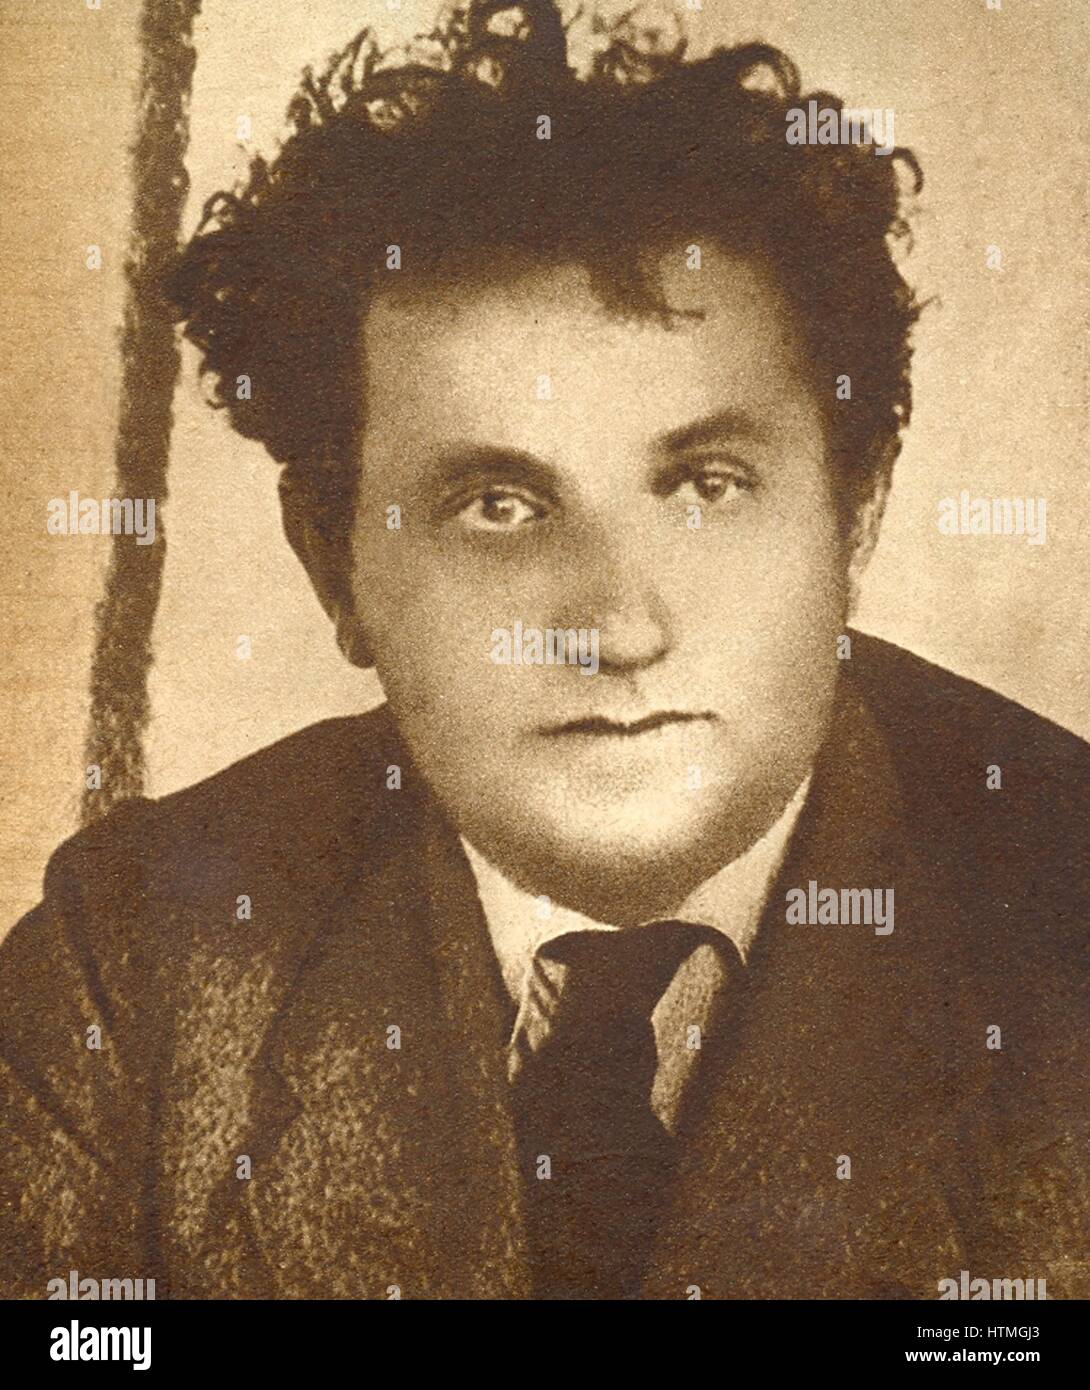 Grigory Zinoviev (1883-1936), prominentes Mitglied der kommunistischen Partei Russlands. Aufgeladen mit der Bildung einer terroristischen Vereinigung, Stalin zu beseitigen, wurde er schuldig gesprochen und hingerichtet aufgefunden. Zinoviev Buchstabe: Im Oktober 1924 unterbrochen britischen Geheimdienst (MI5) einen Brief, Stockfoto